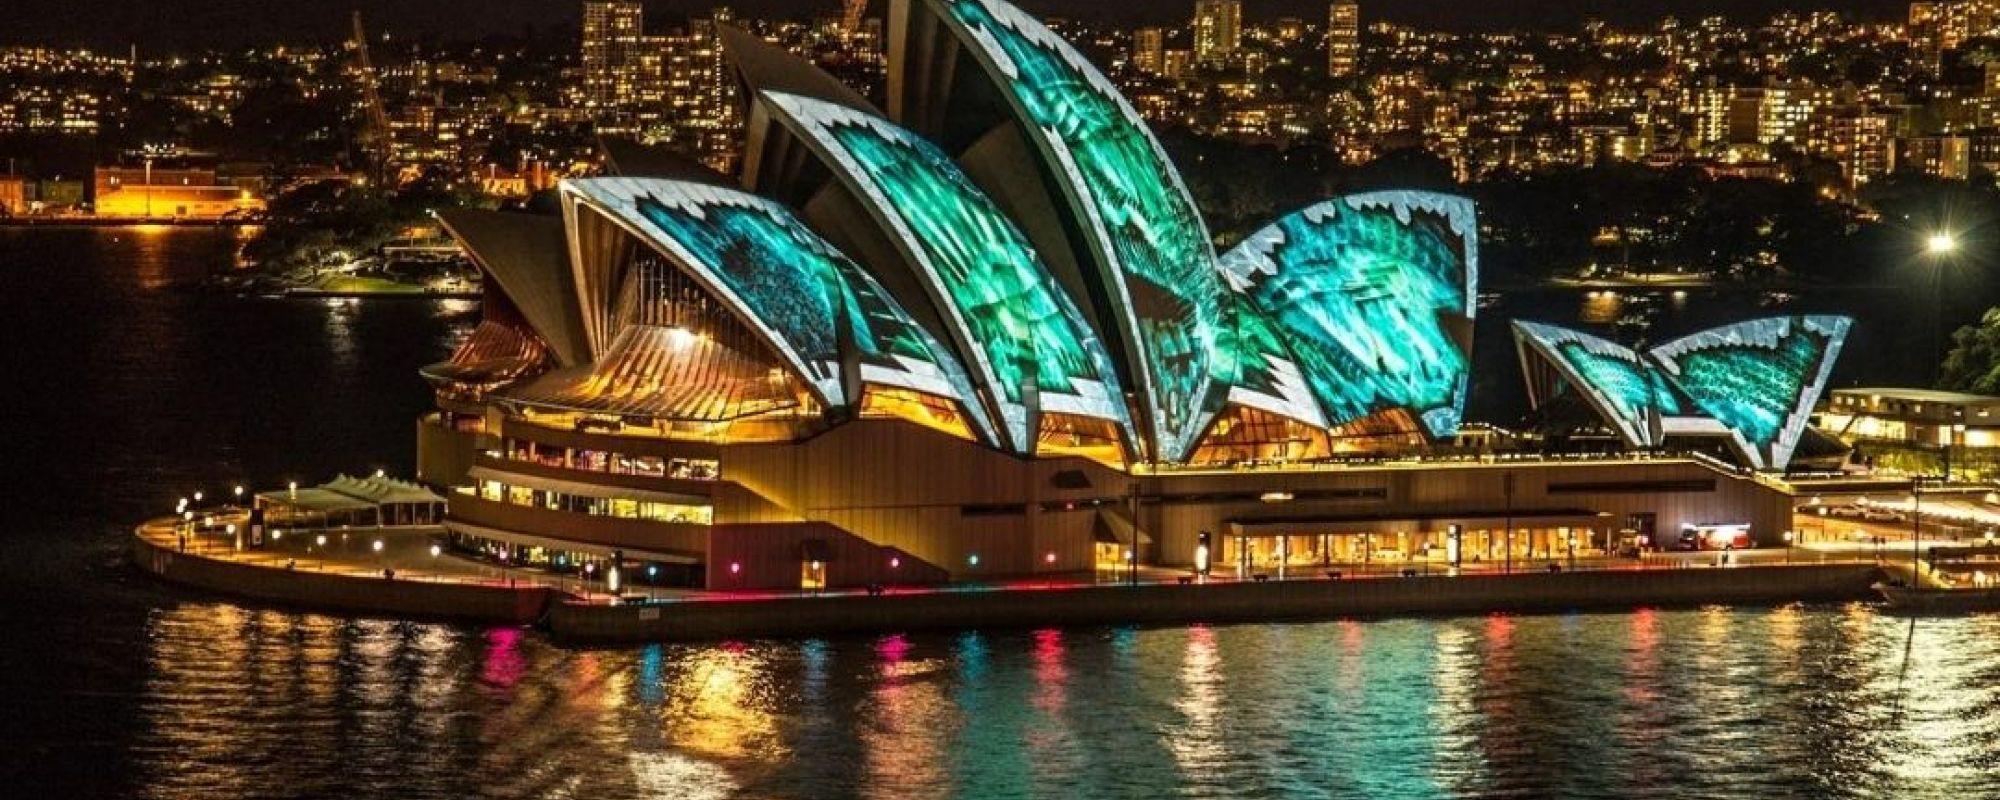 Vivid Cruise - Sydney Opera House